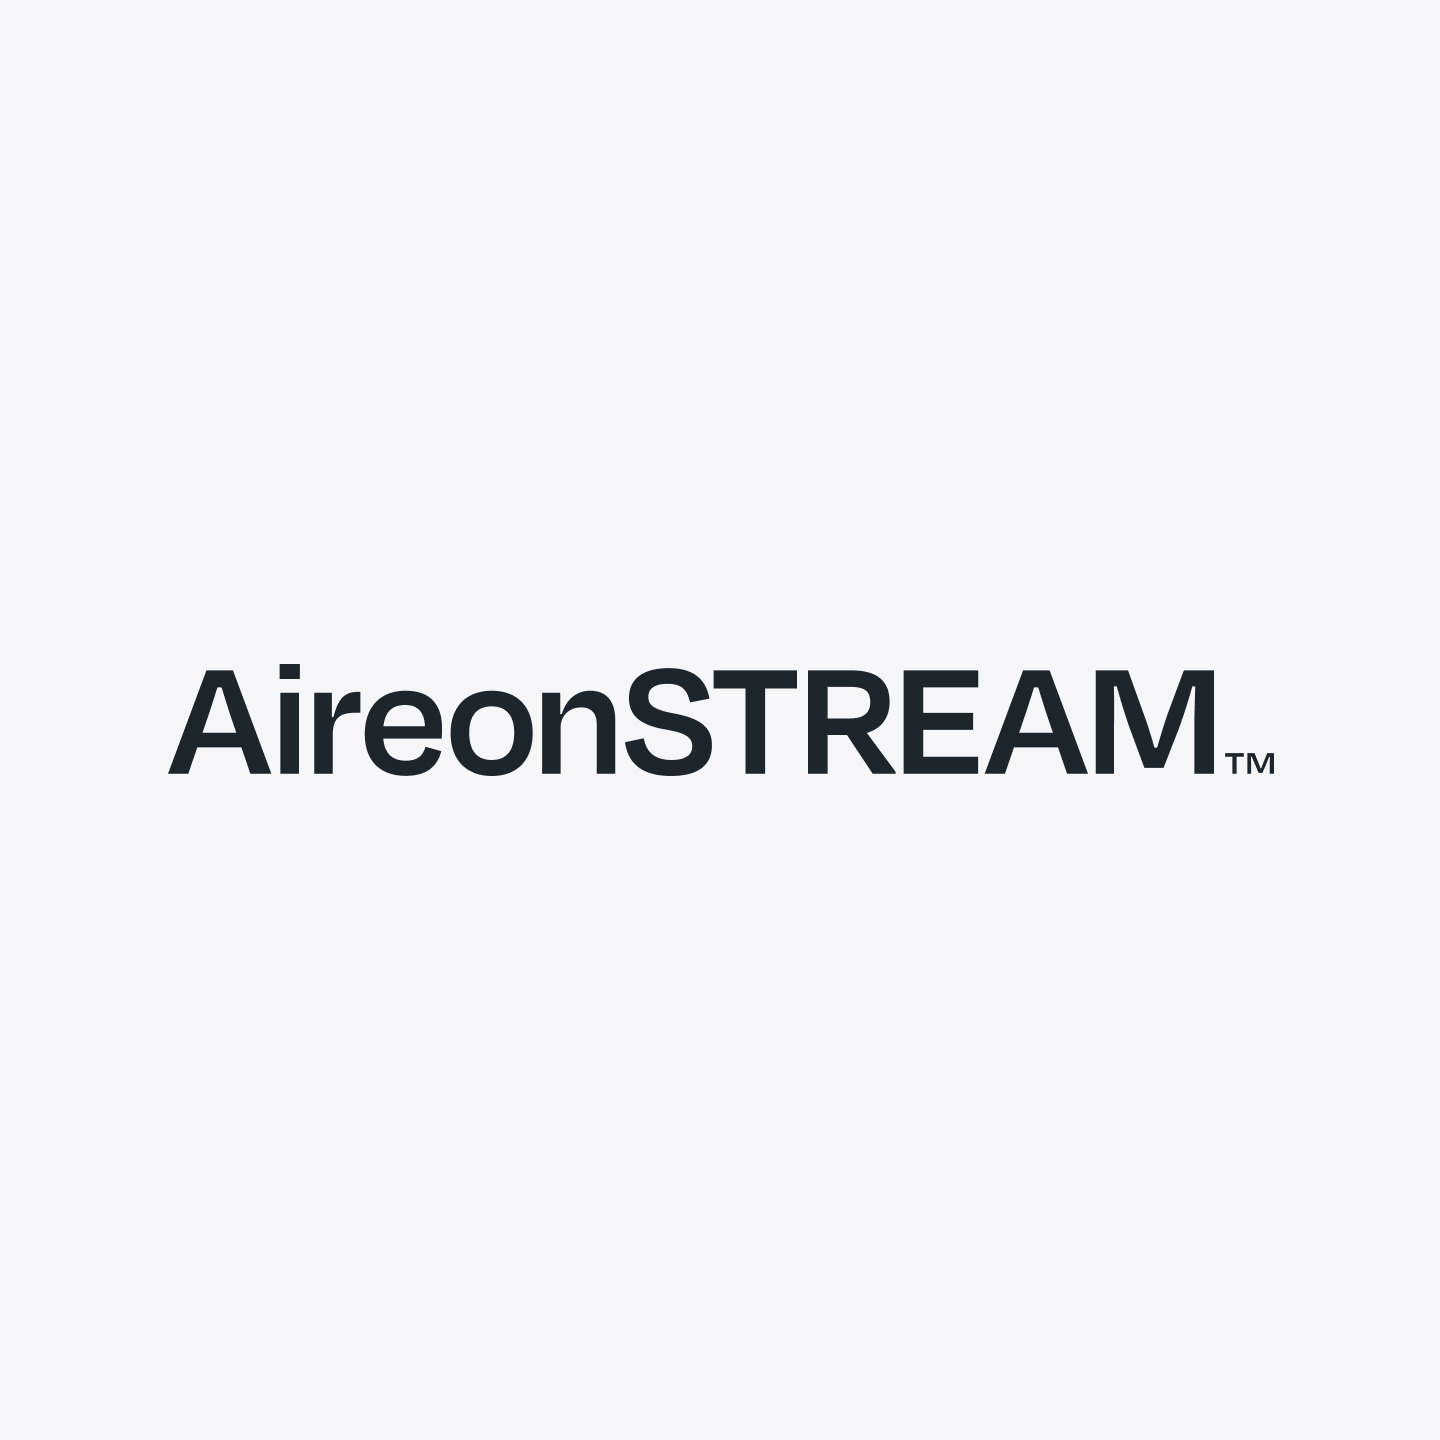 aireonstream logo